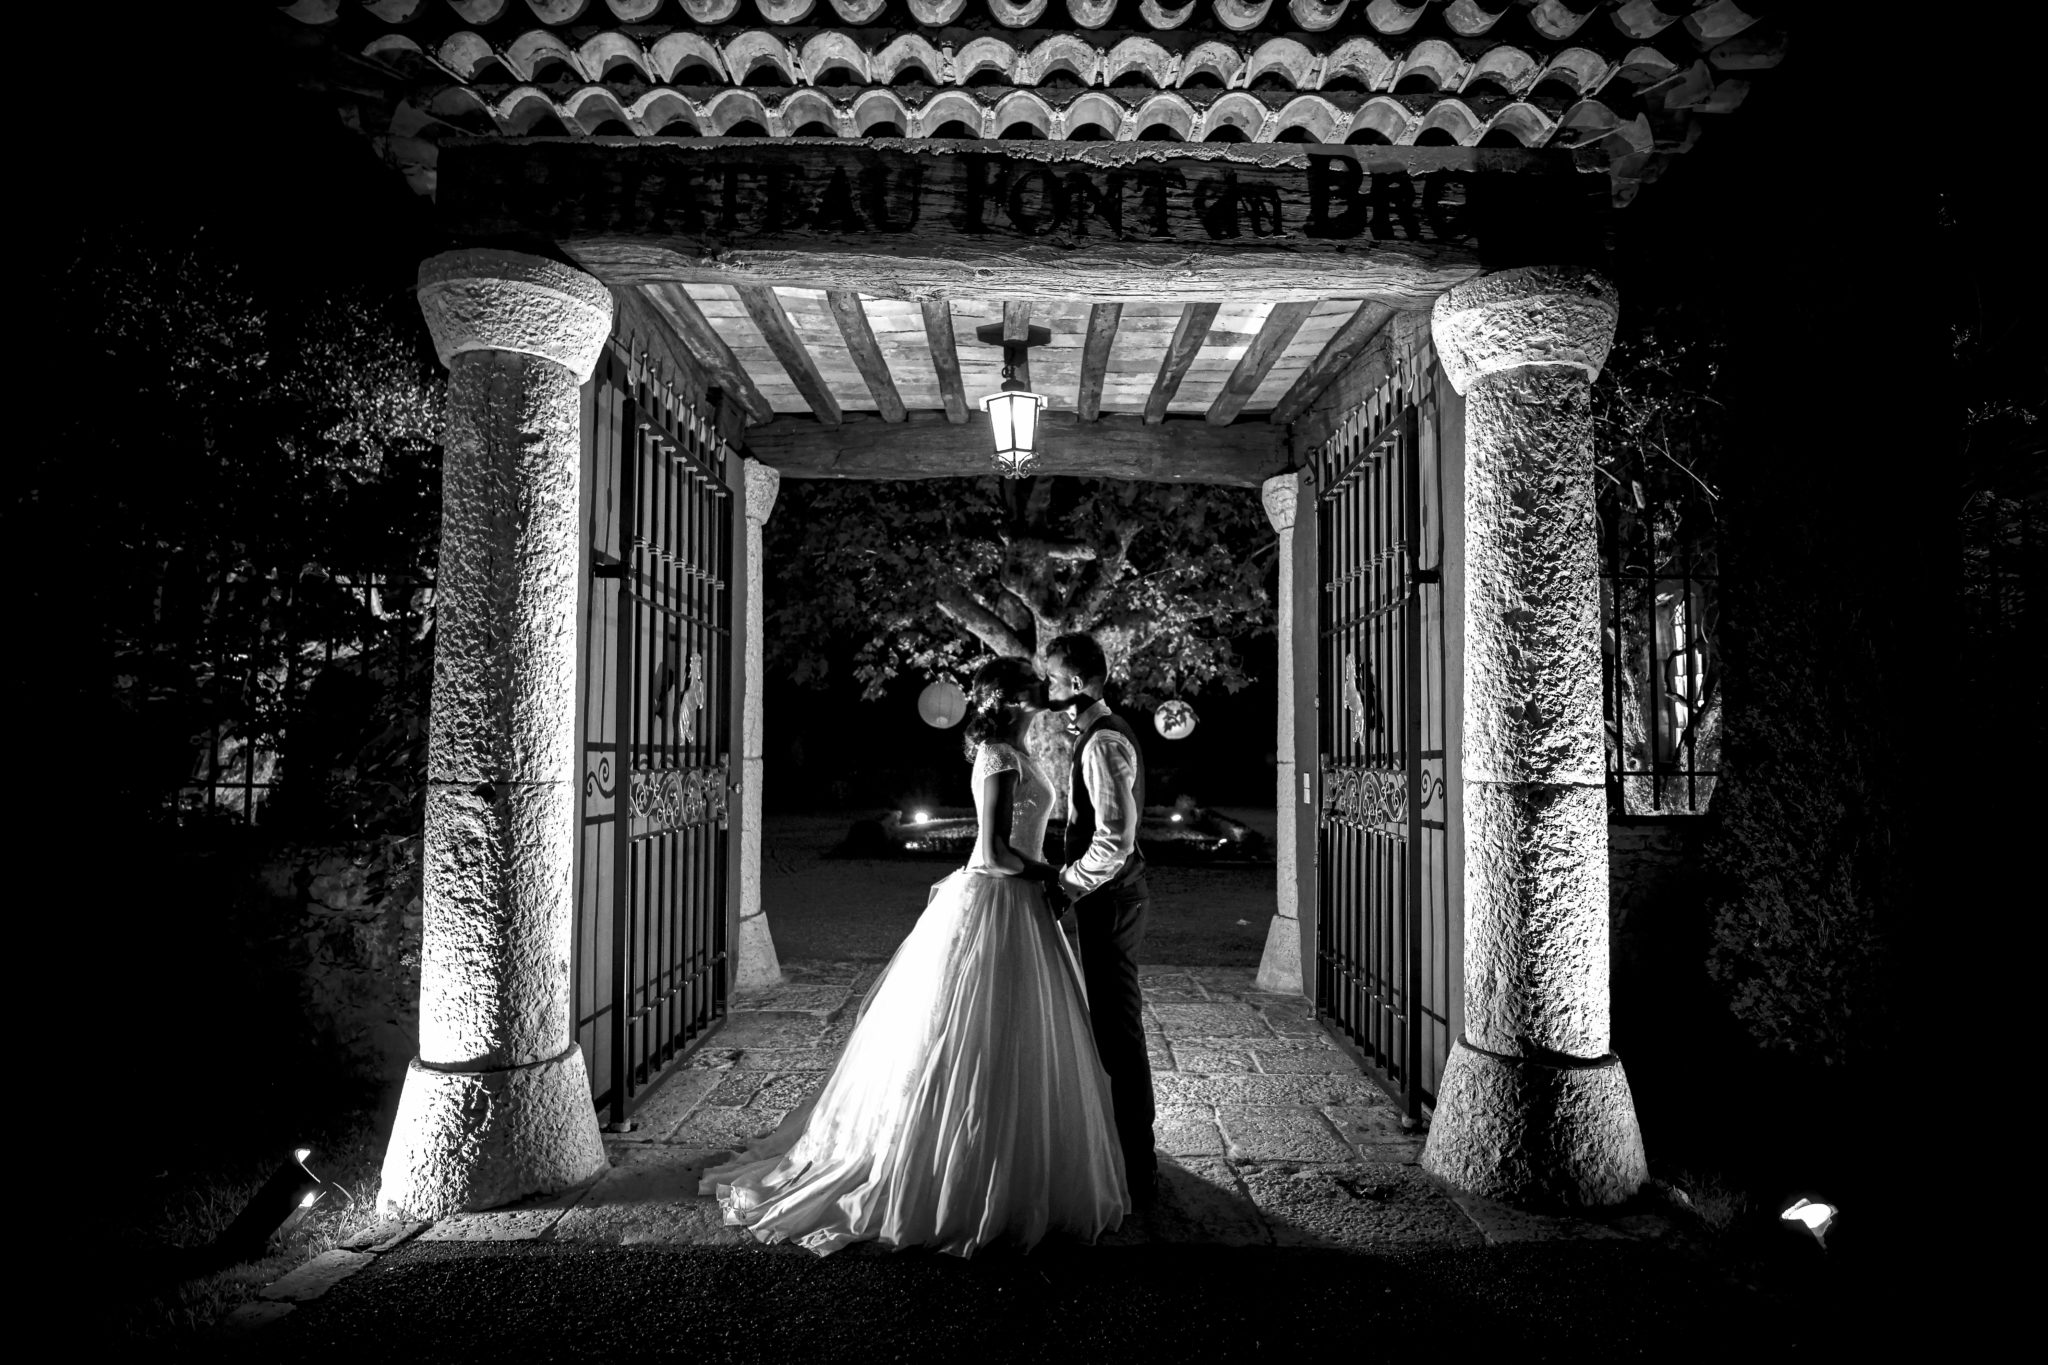 Jean-luc et Guillaume Planat photographe videaste mariage toulon -Nice - Aix en provence - Montpellier - Nimes - Var -Herault - Occitanie - PACA - Corse